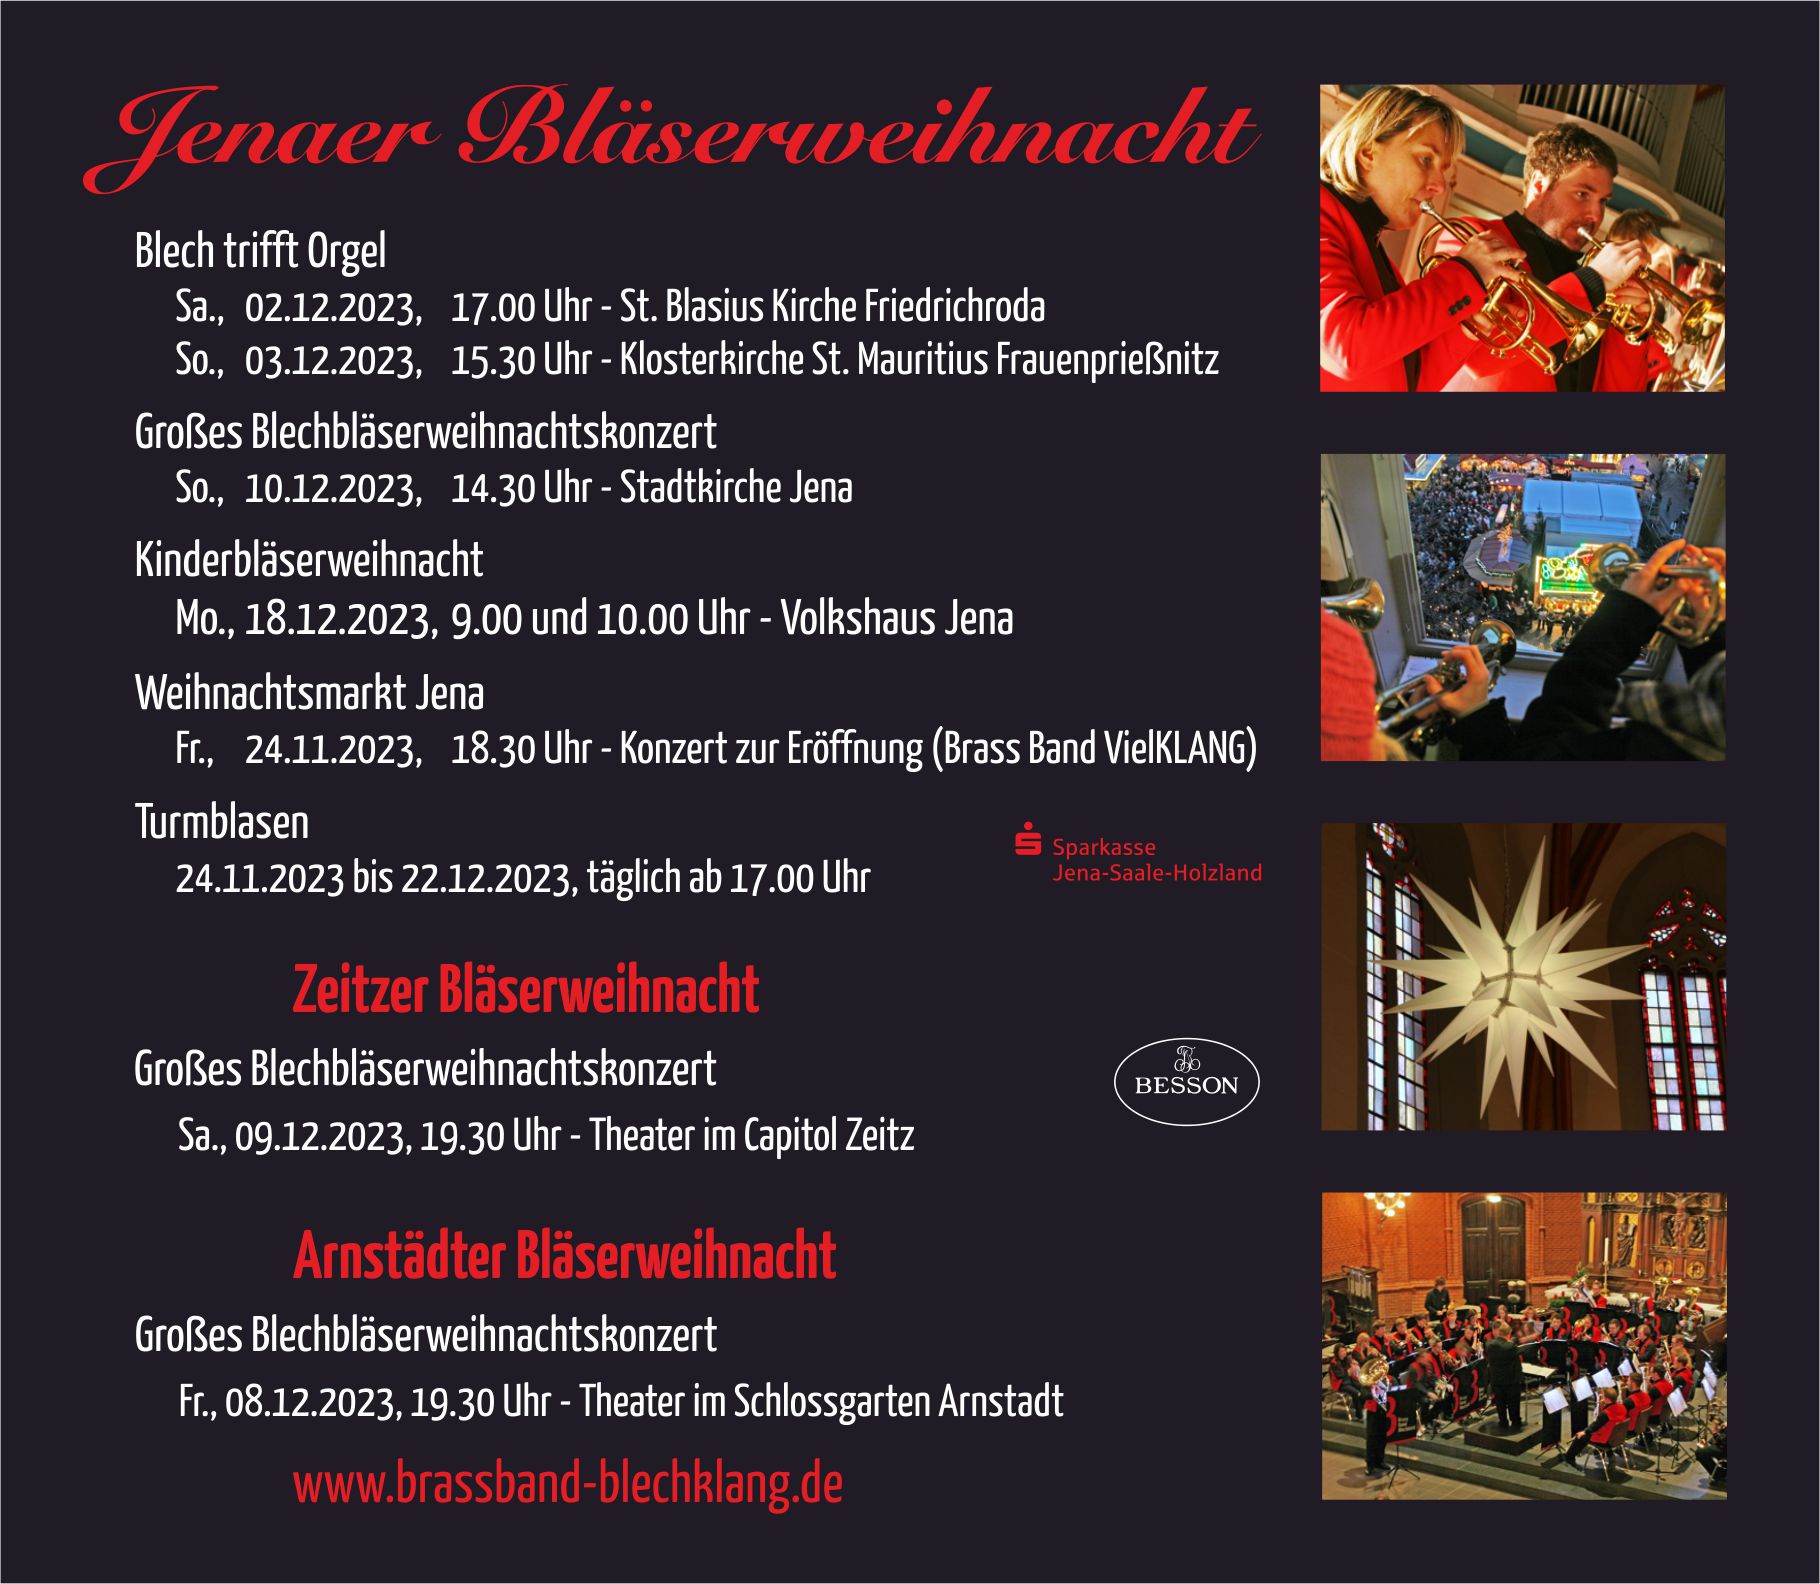 Termine Bläserweihnacht Brass Band BlechKLANG 2023